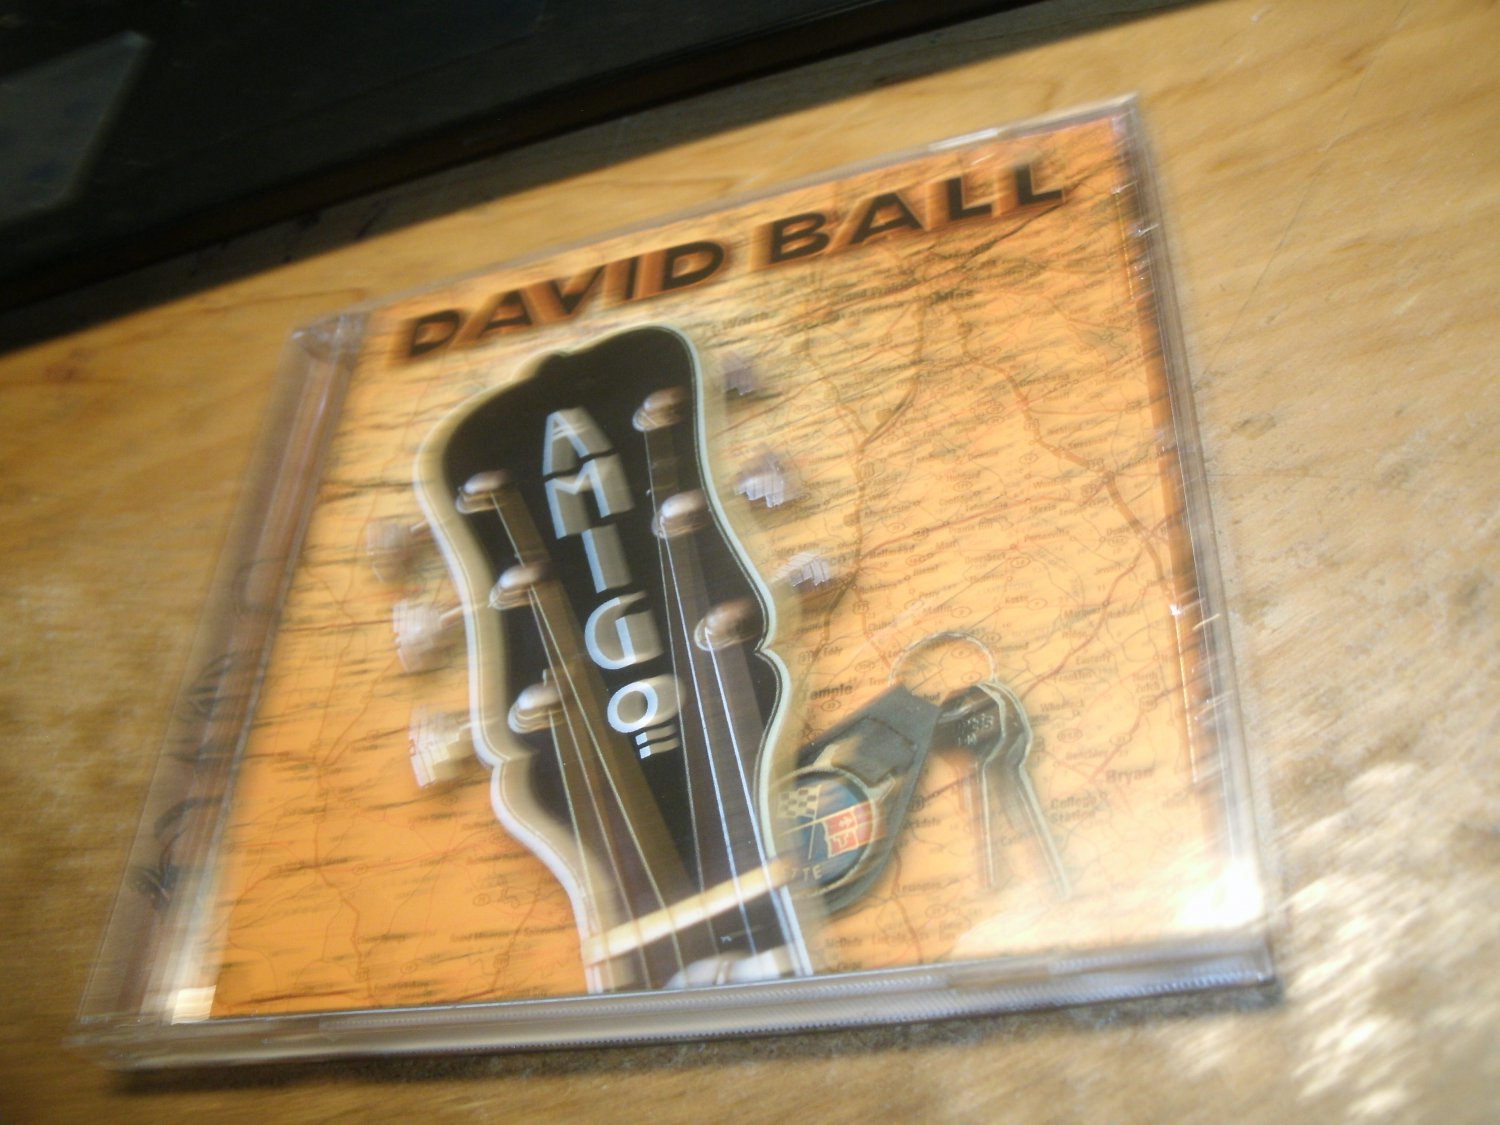 used cd-david ball-amigo-2001-country-dualtone